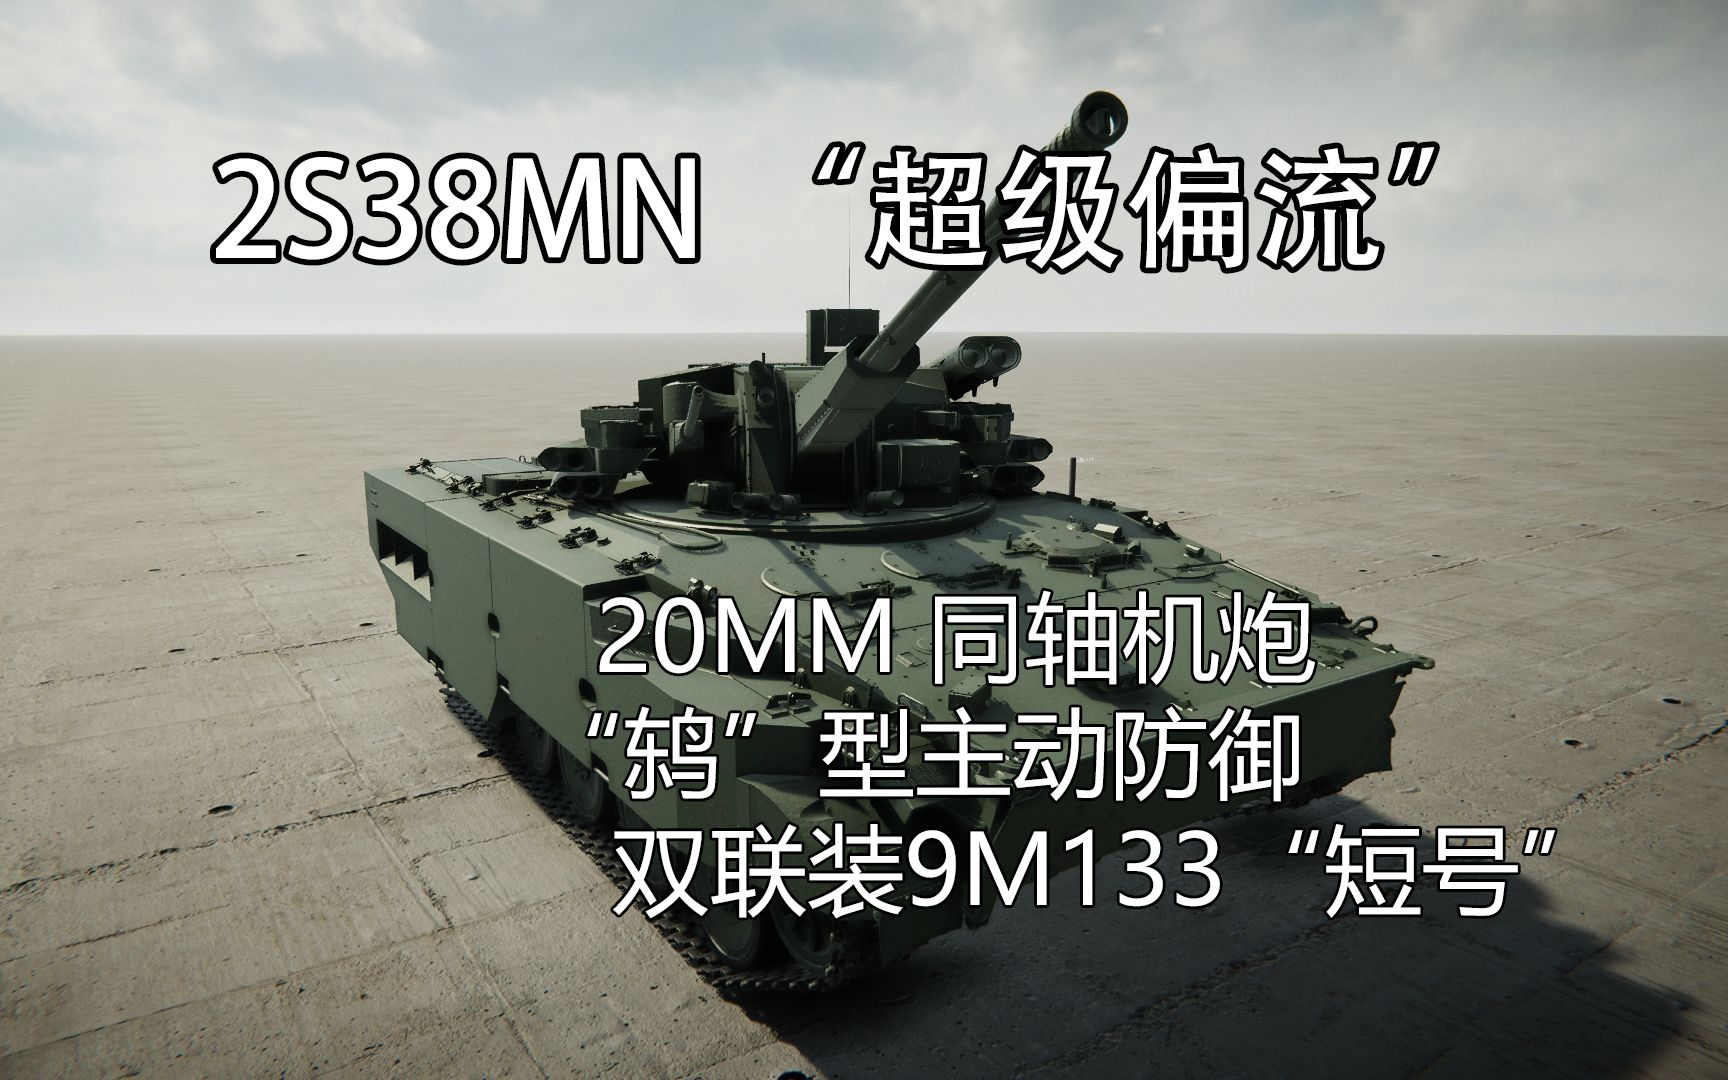 双联短号+主动防御+20mm机炮  2S38MN“超级偏流”